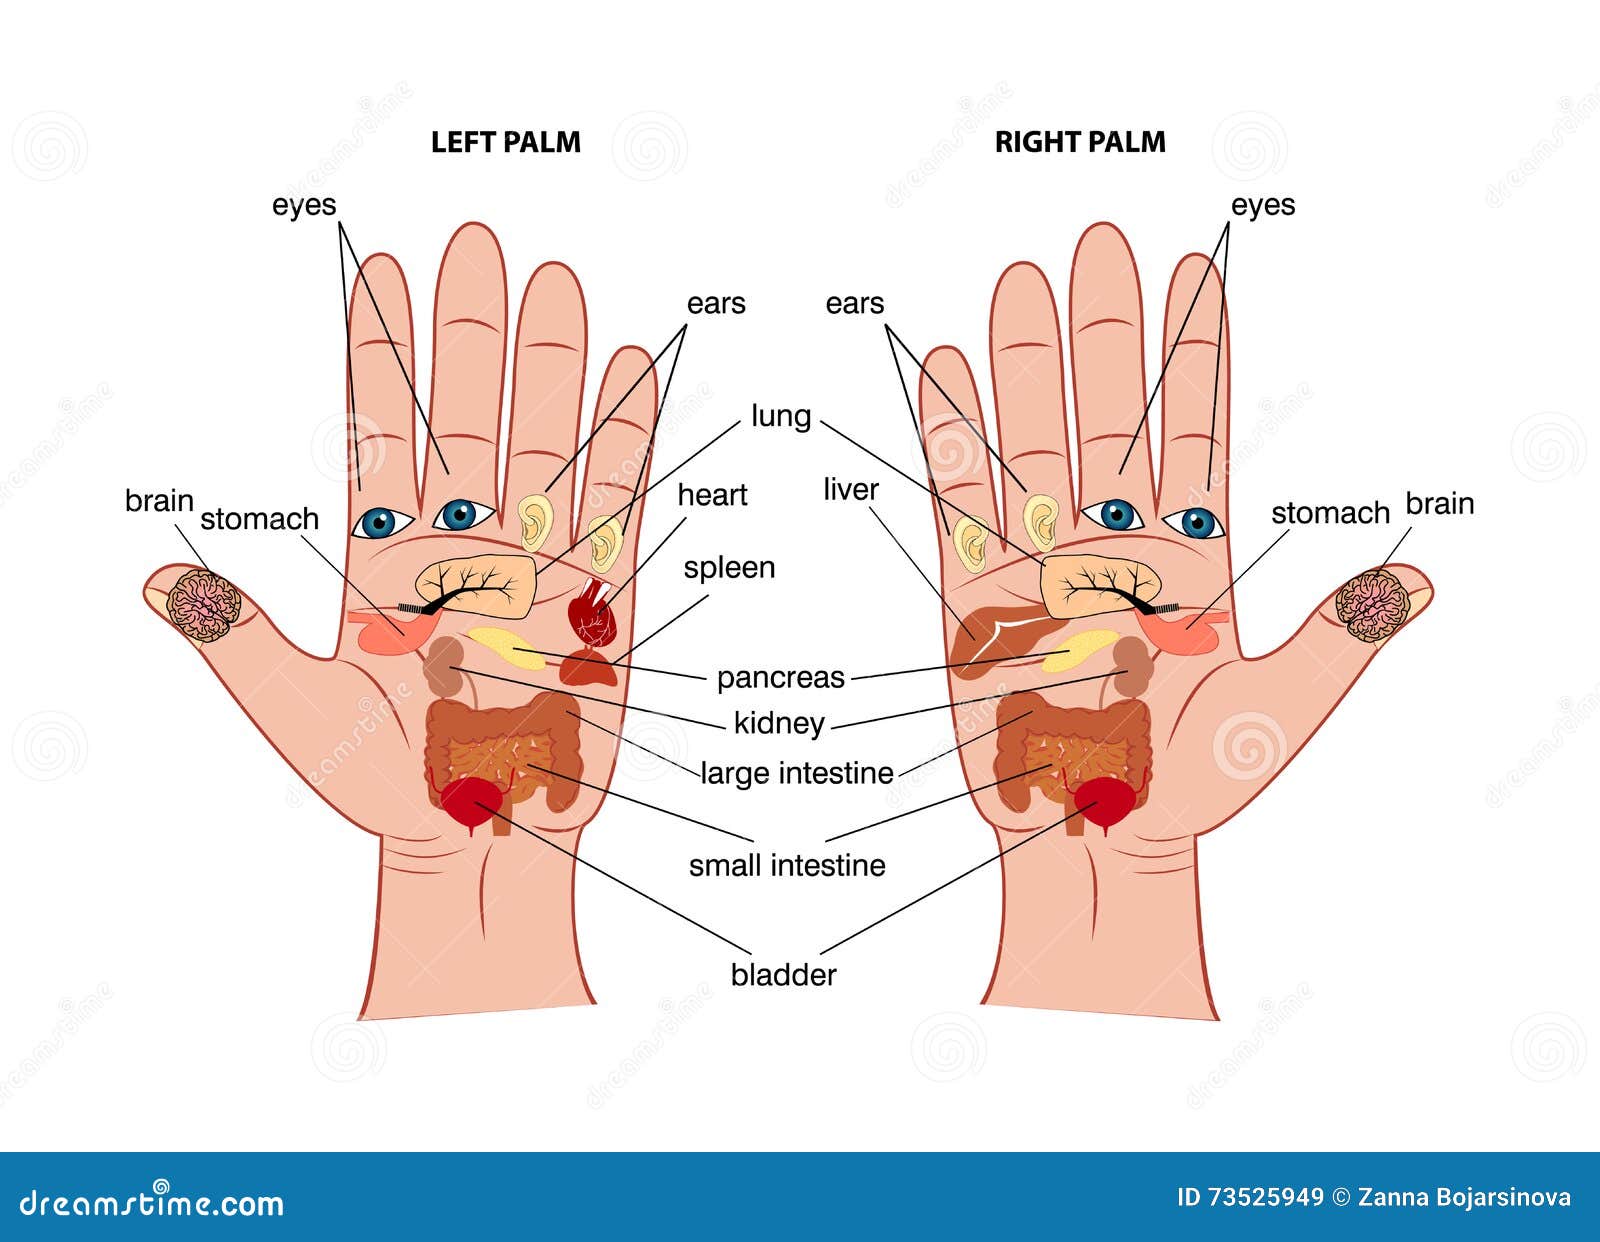 hand reflexology chart